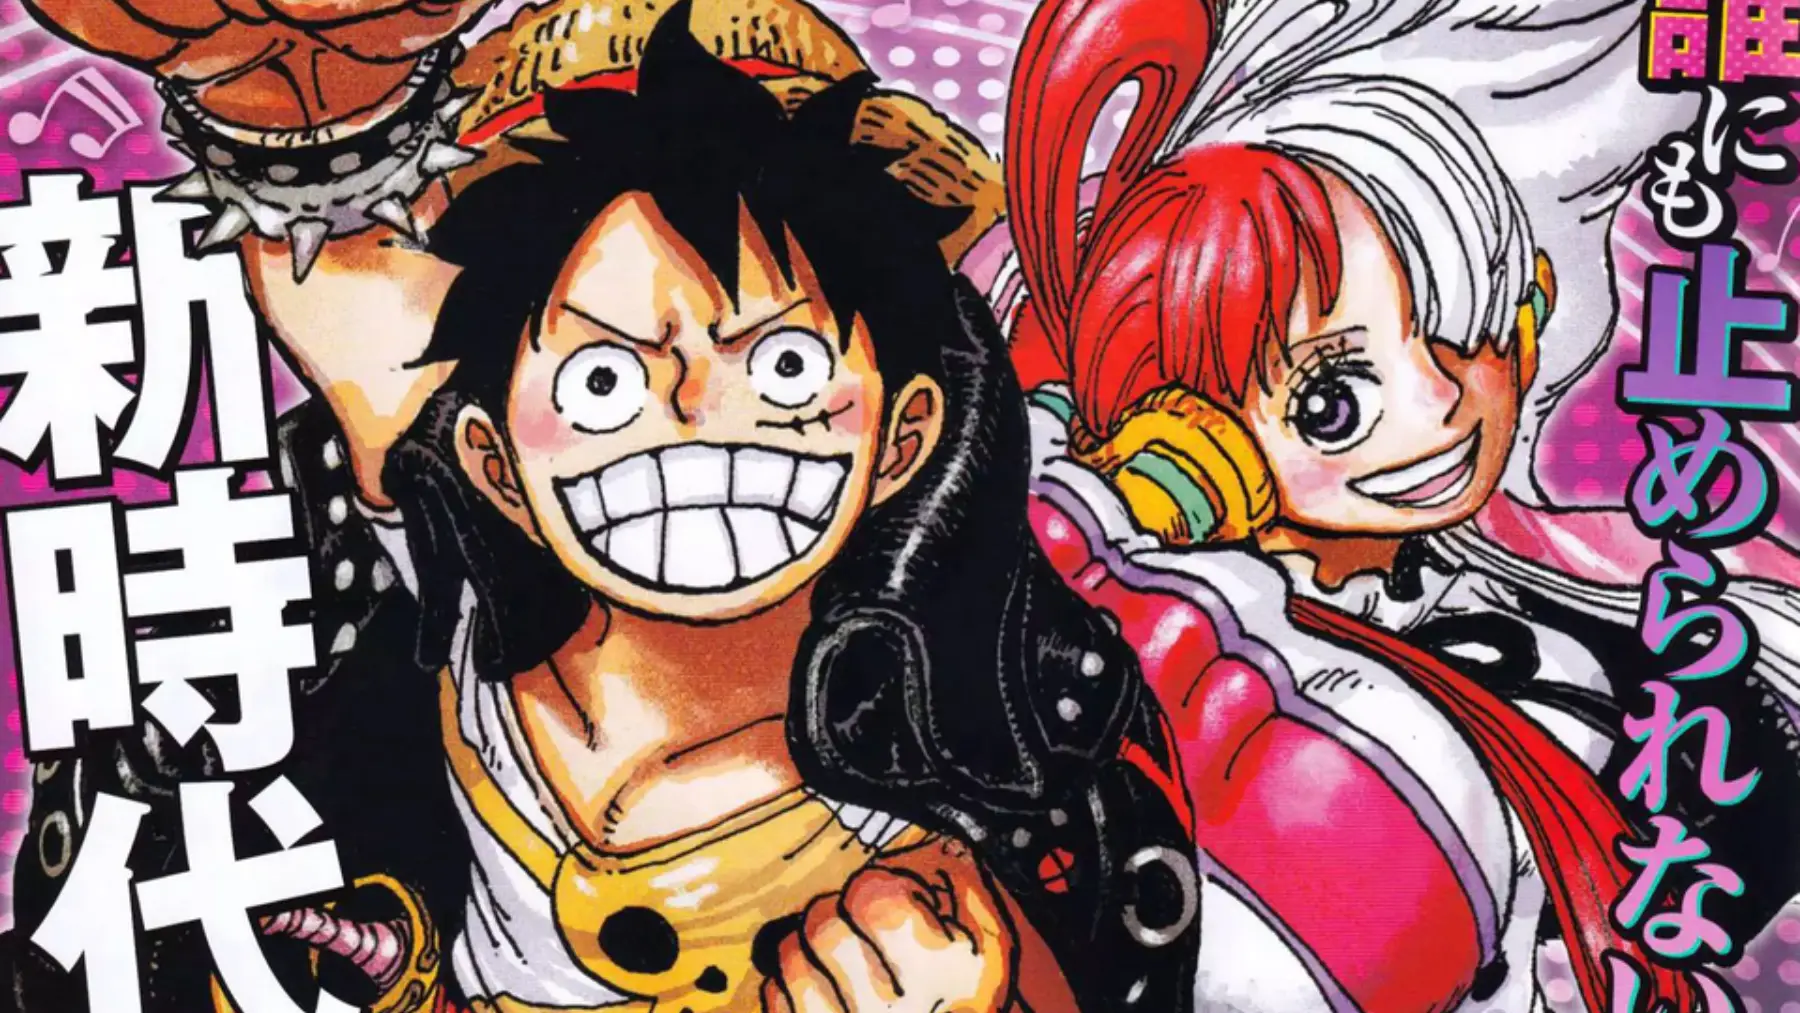 Dónde leer el manga One Piece 1065 en español: Fecha de estreno y horario